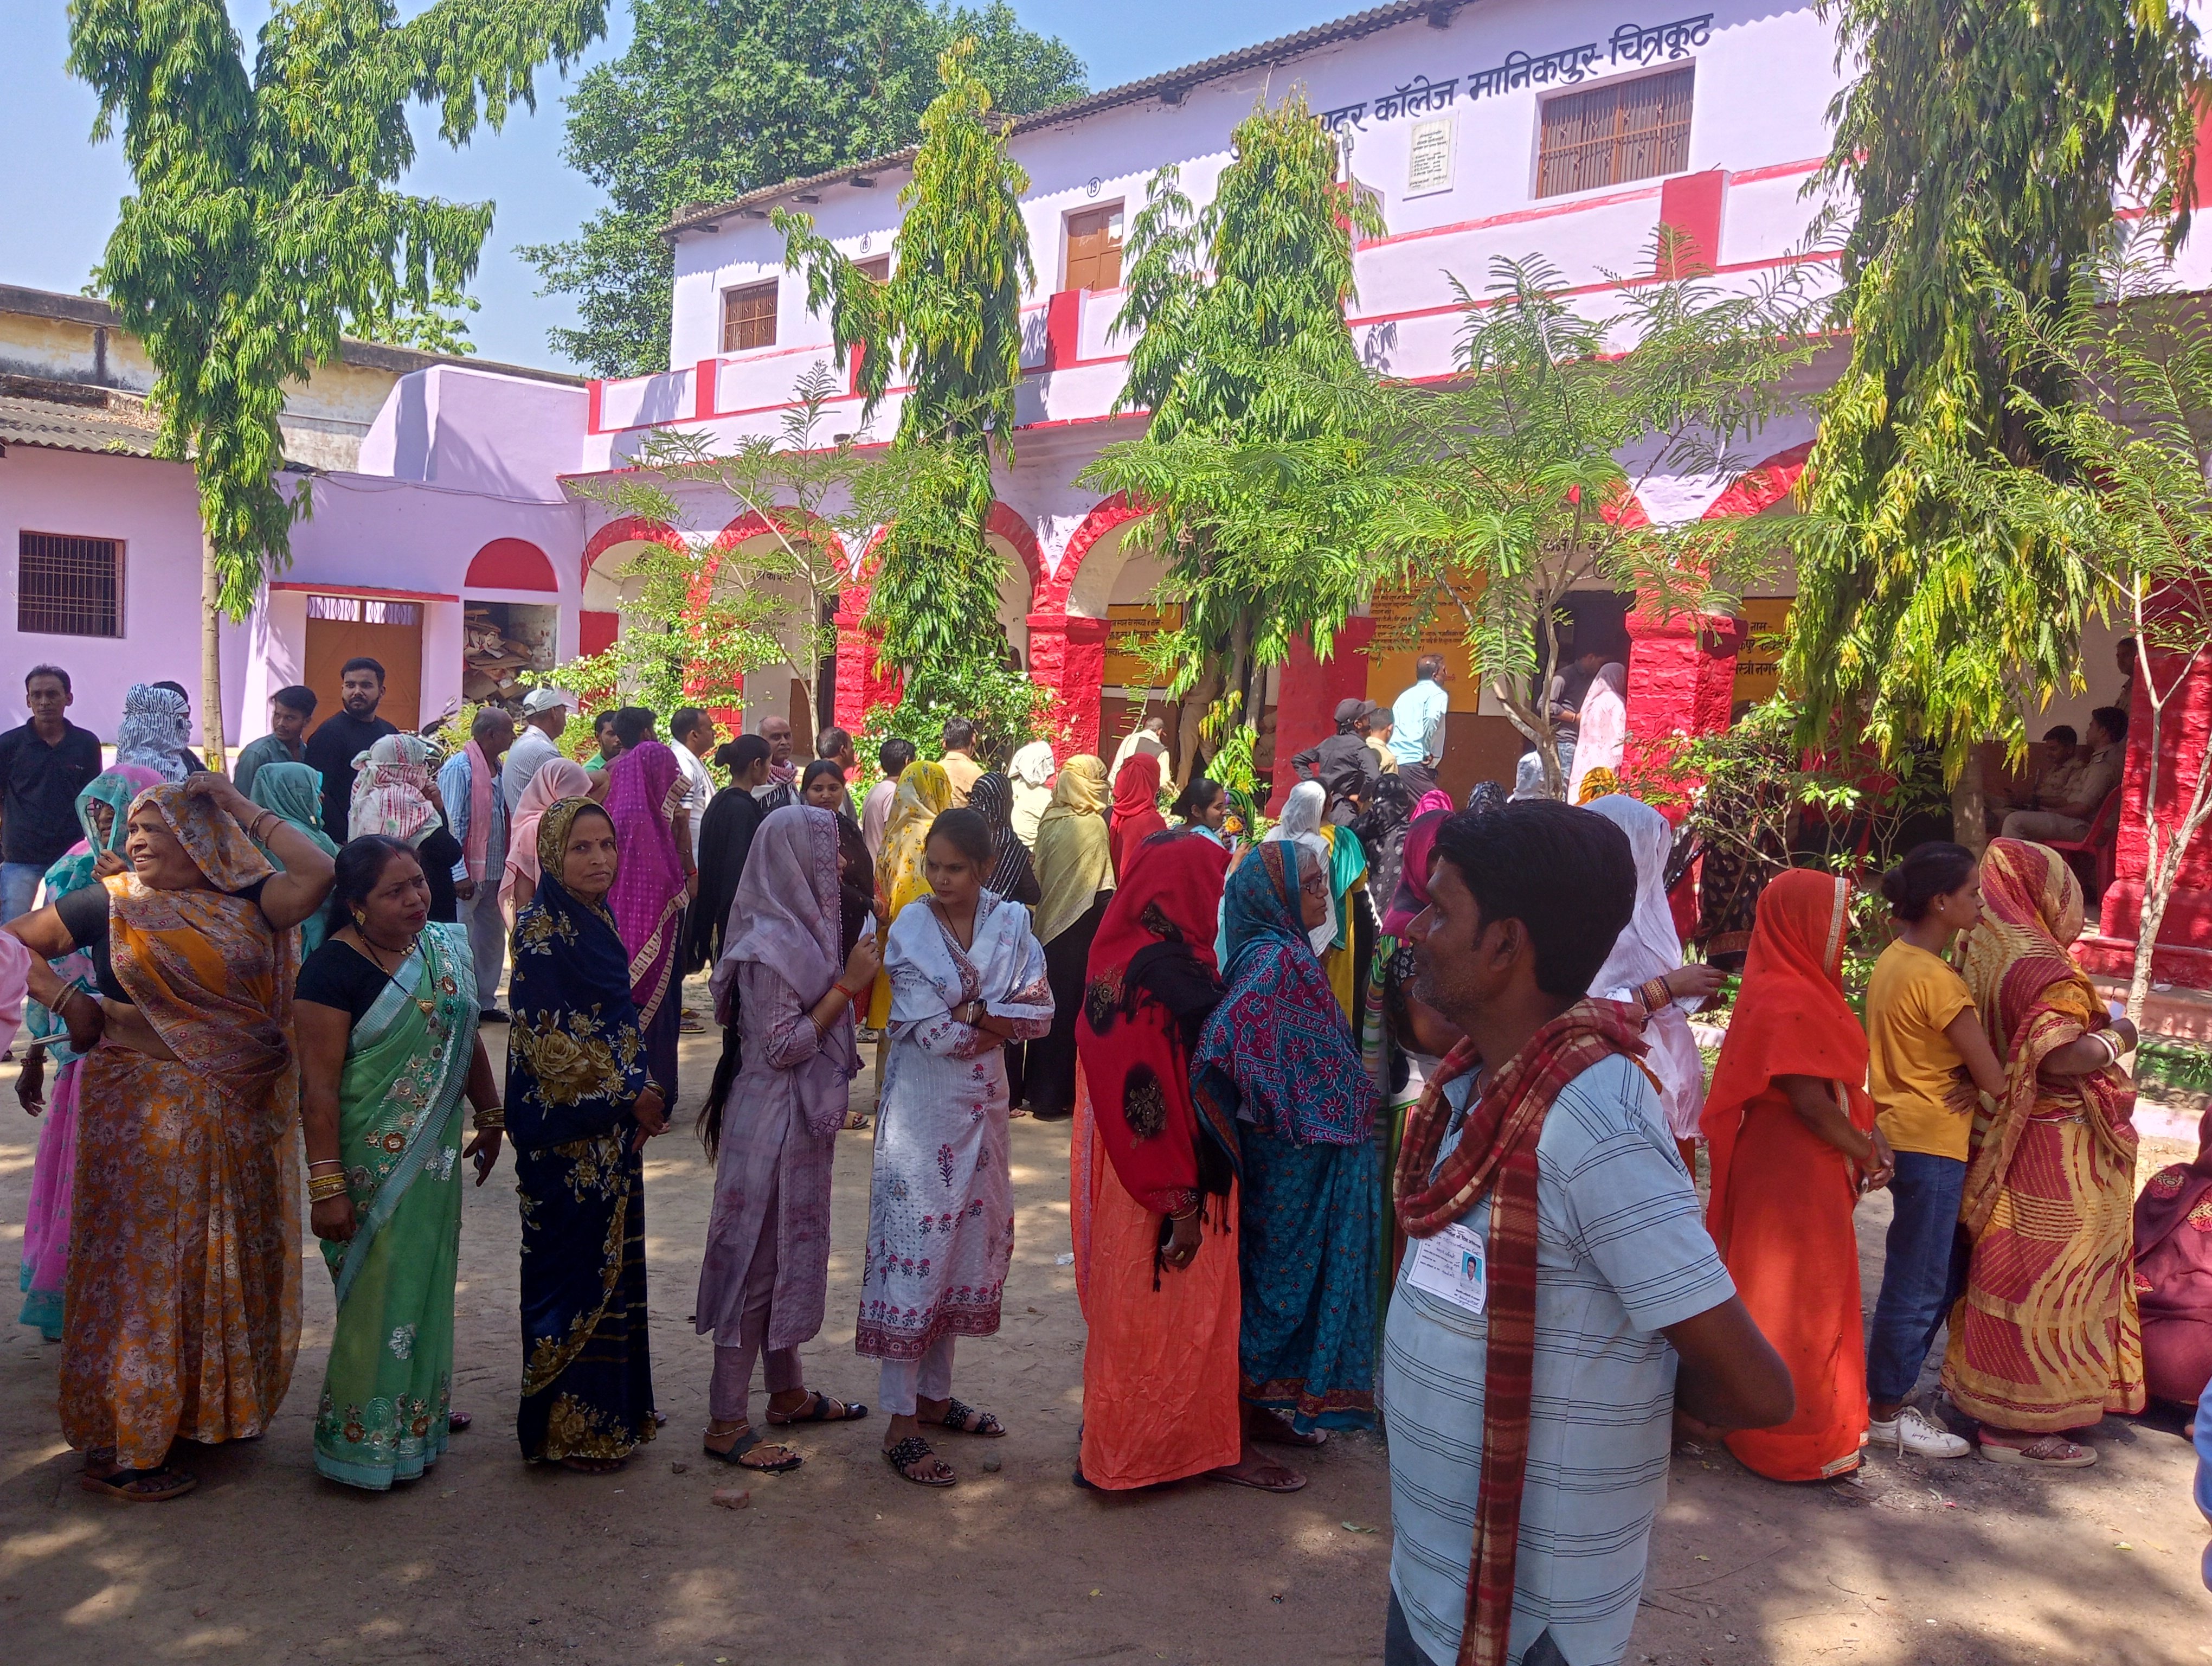 Nagar nikay chunav: शांतिपूर्ण ढंग से संपन्न हुआ मतदान,जाने कितने प्रतिशत पड़े वोट | Polling completed peacefully in Chitrakoot | Patrika News